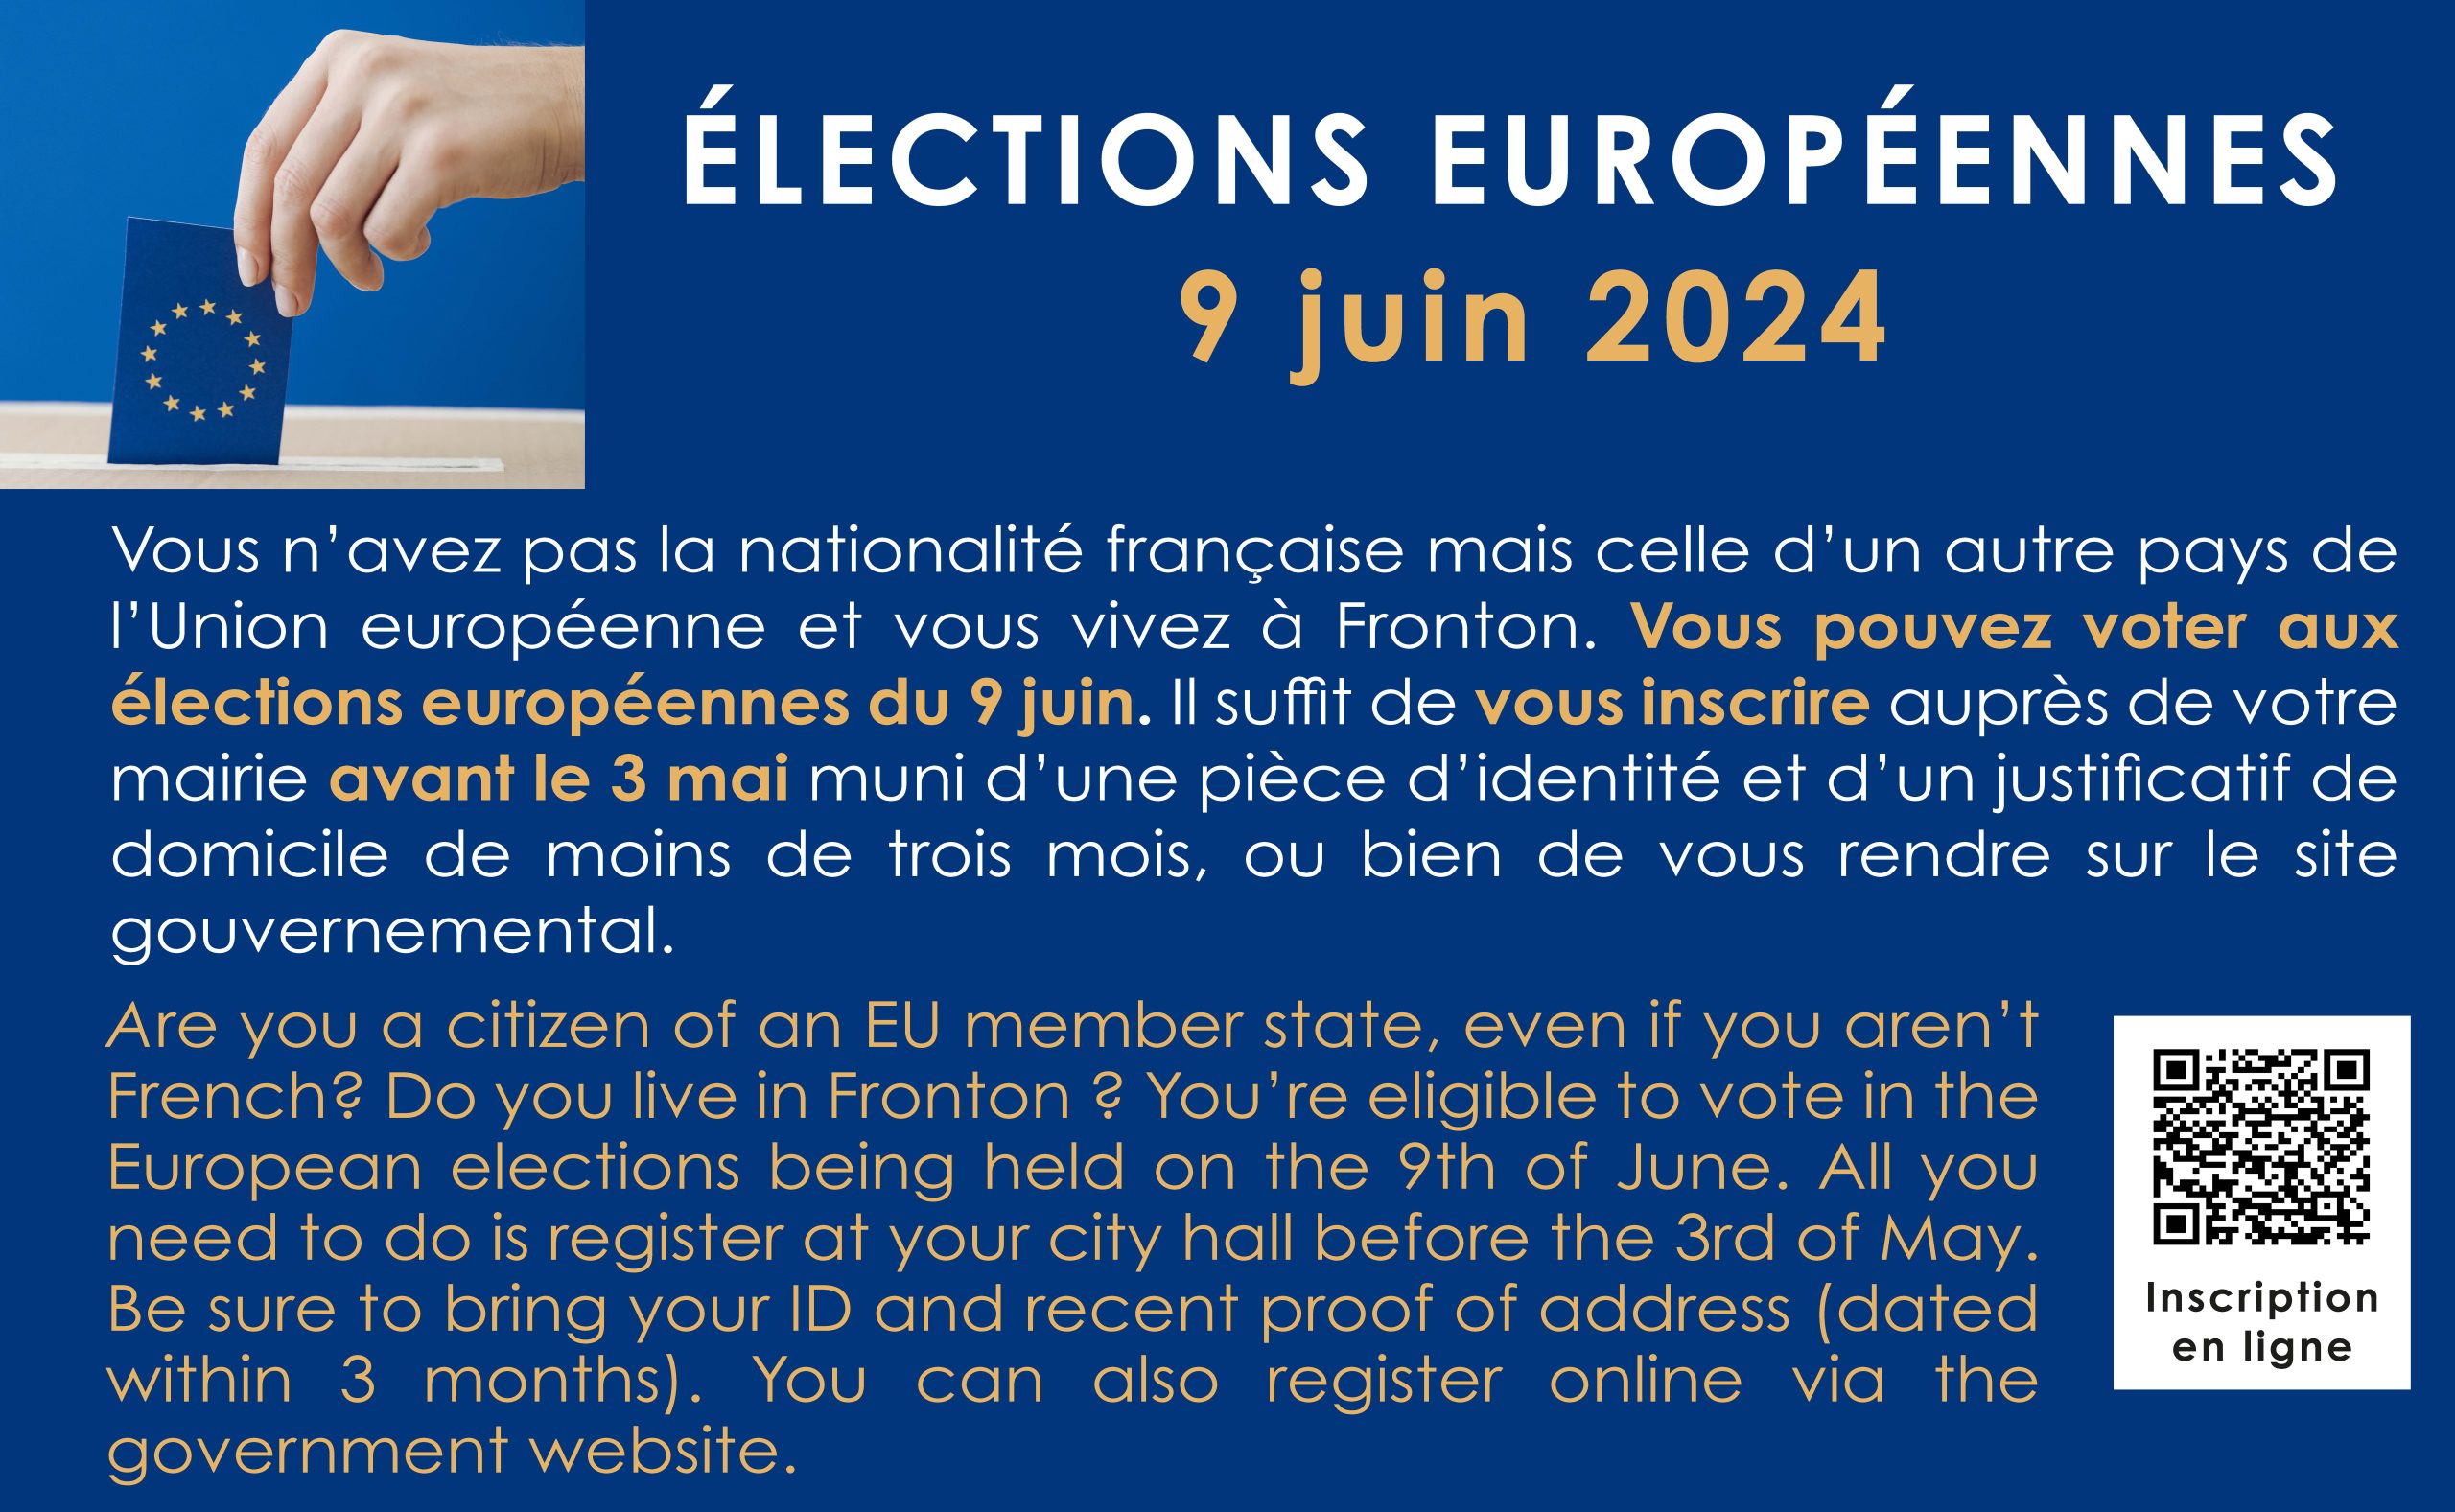 Elections Européennes 2024